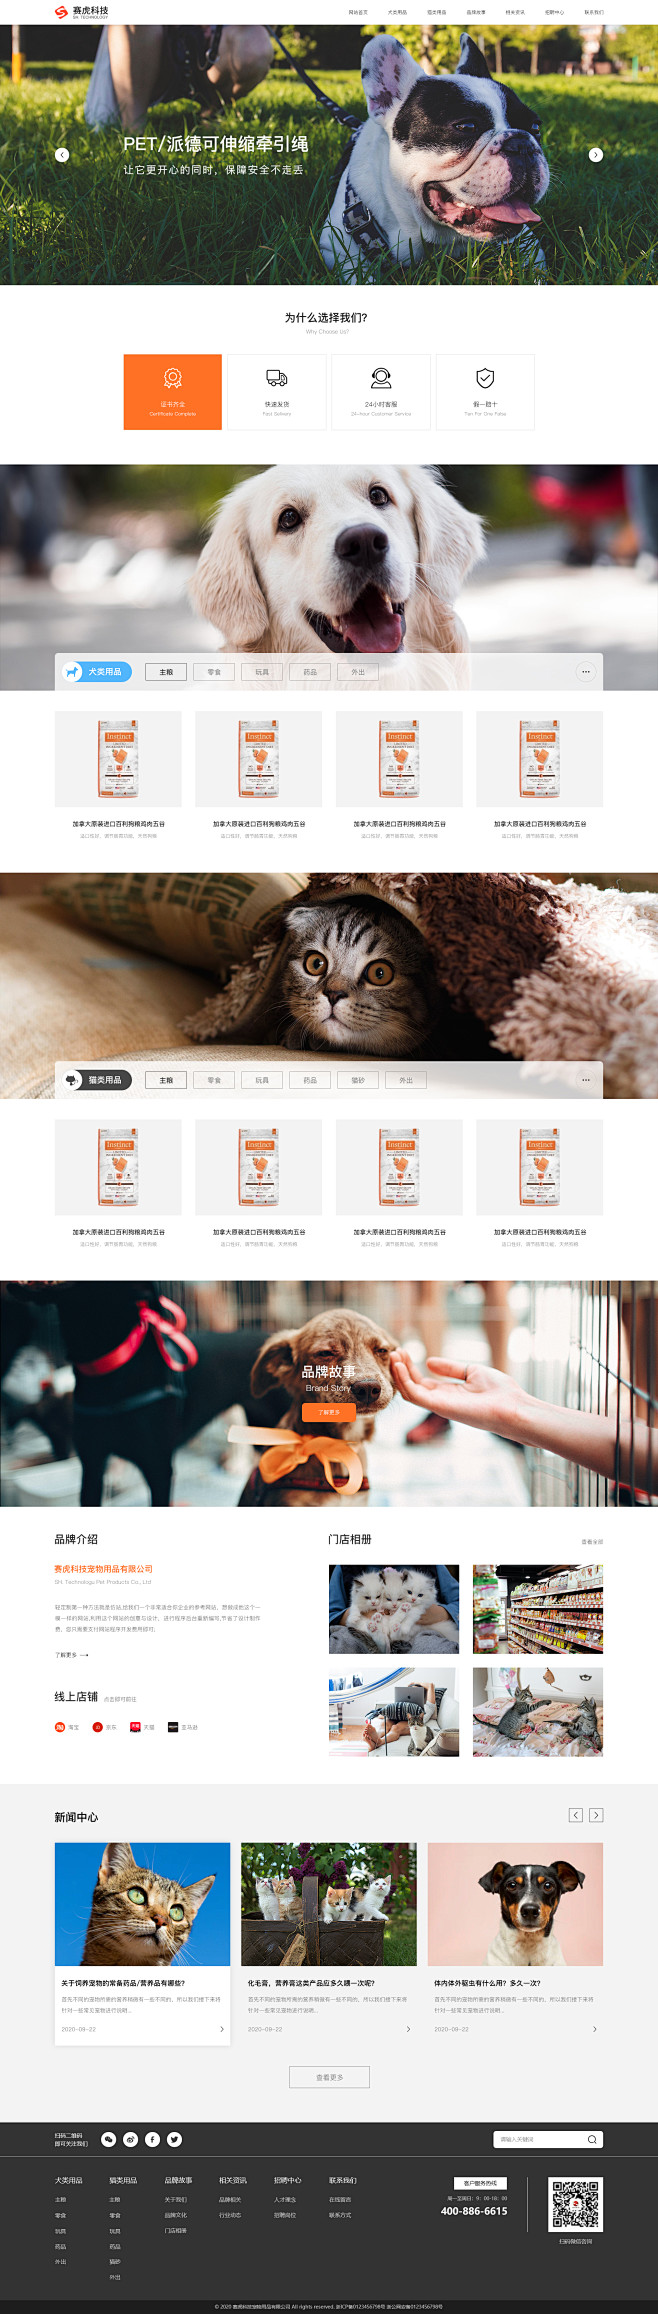 网站设计-宠物用品-宠物相关网站设计。公...